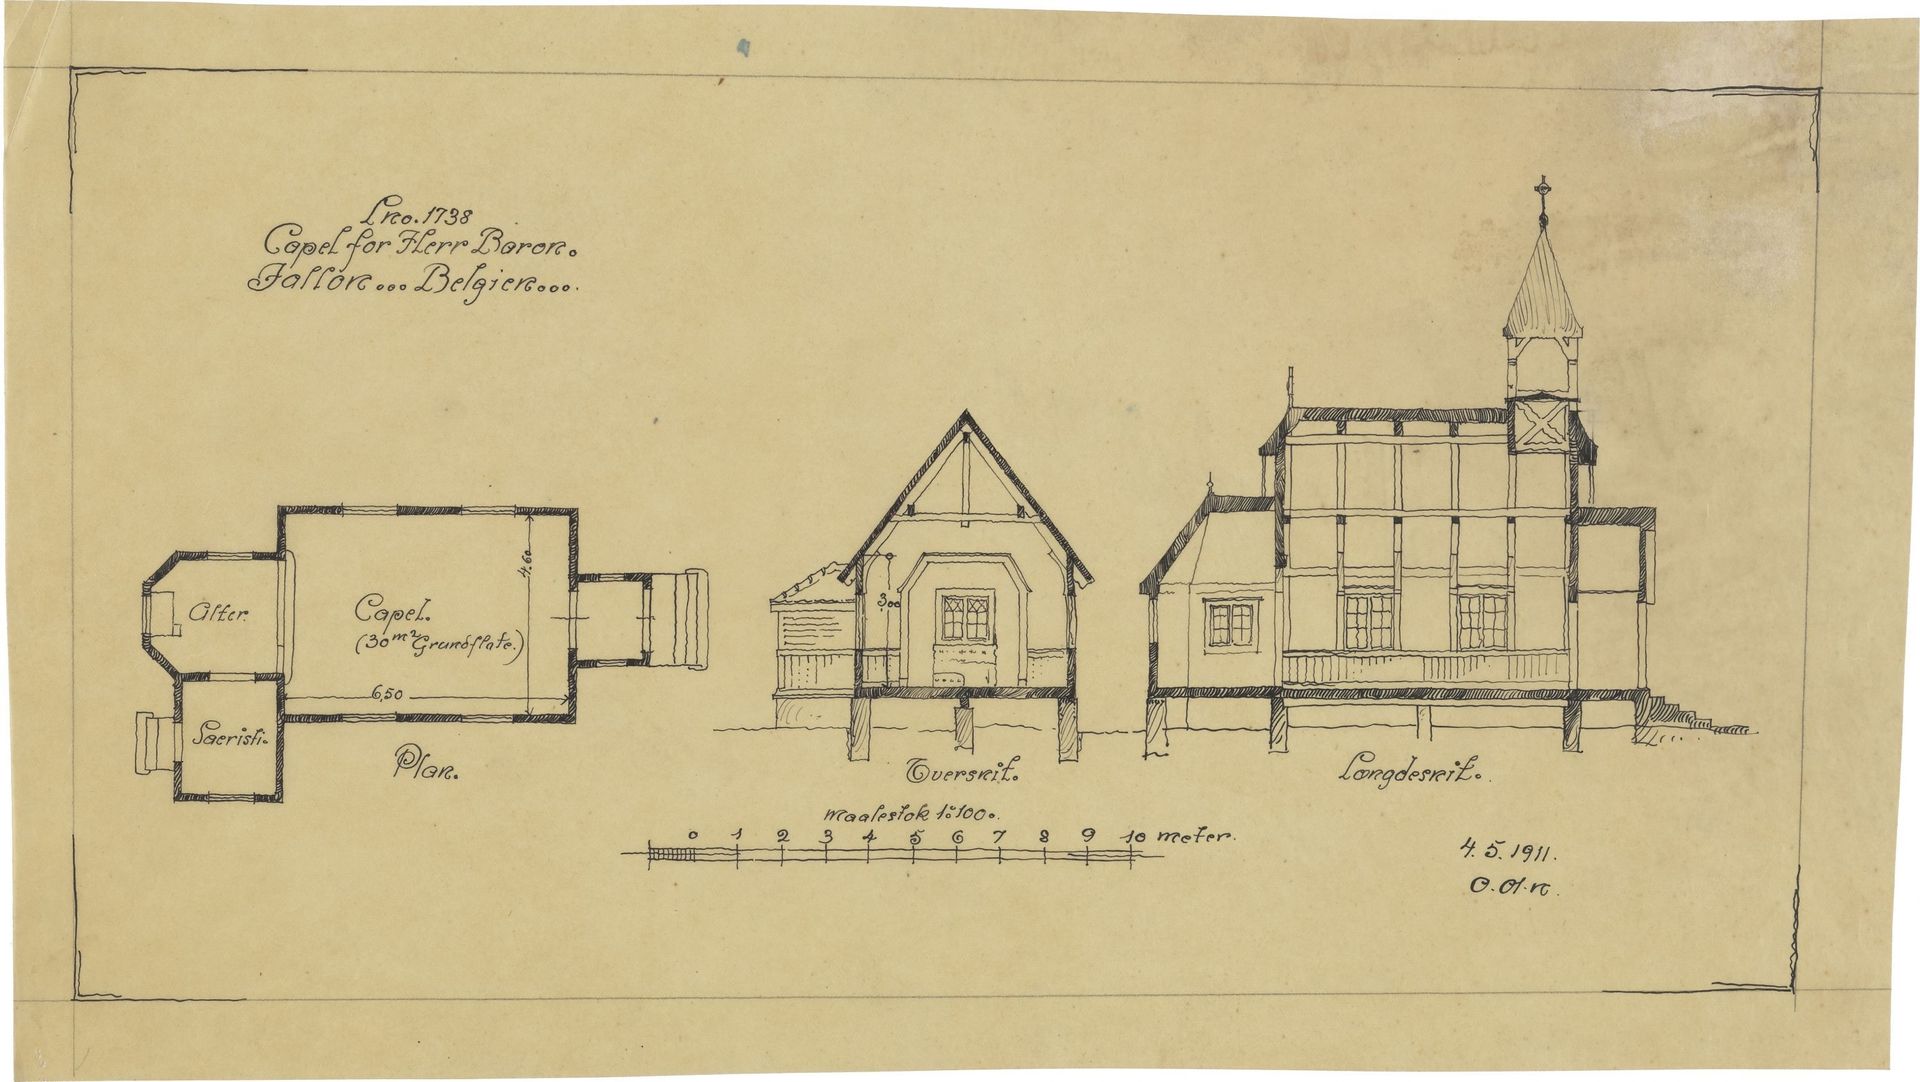 Le plan intermédiaire de la chapelle de Namur retrouvé dans les archives norvégiennes